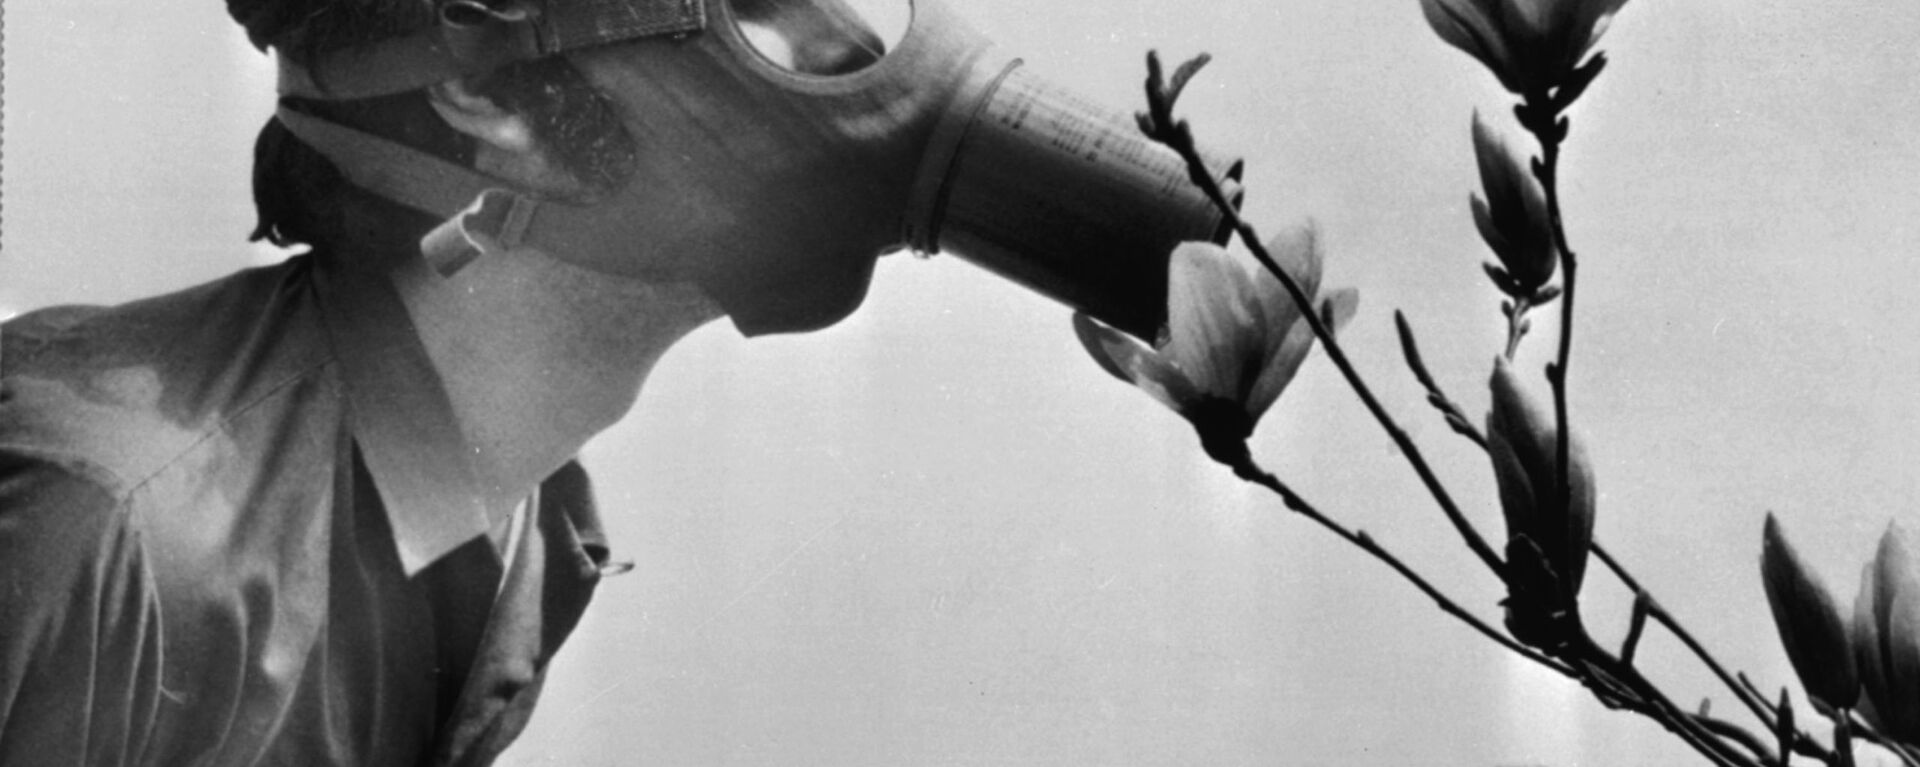 Студент в противогазе нюхает цветок во время демонстрации на День Земли, США, 1970 год - Sputnik Грузия, 1920, 02.11.2020